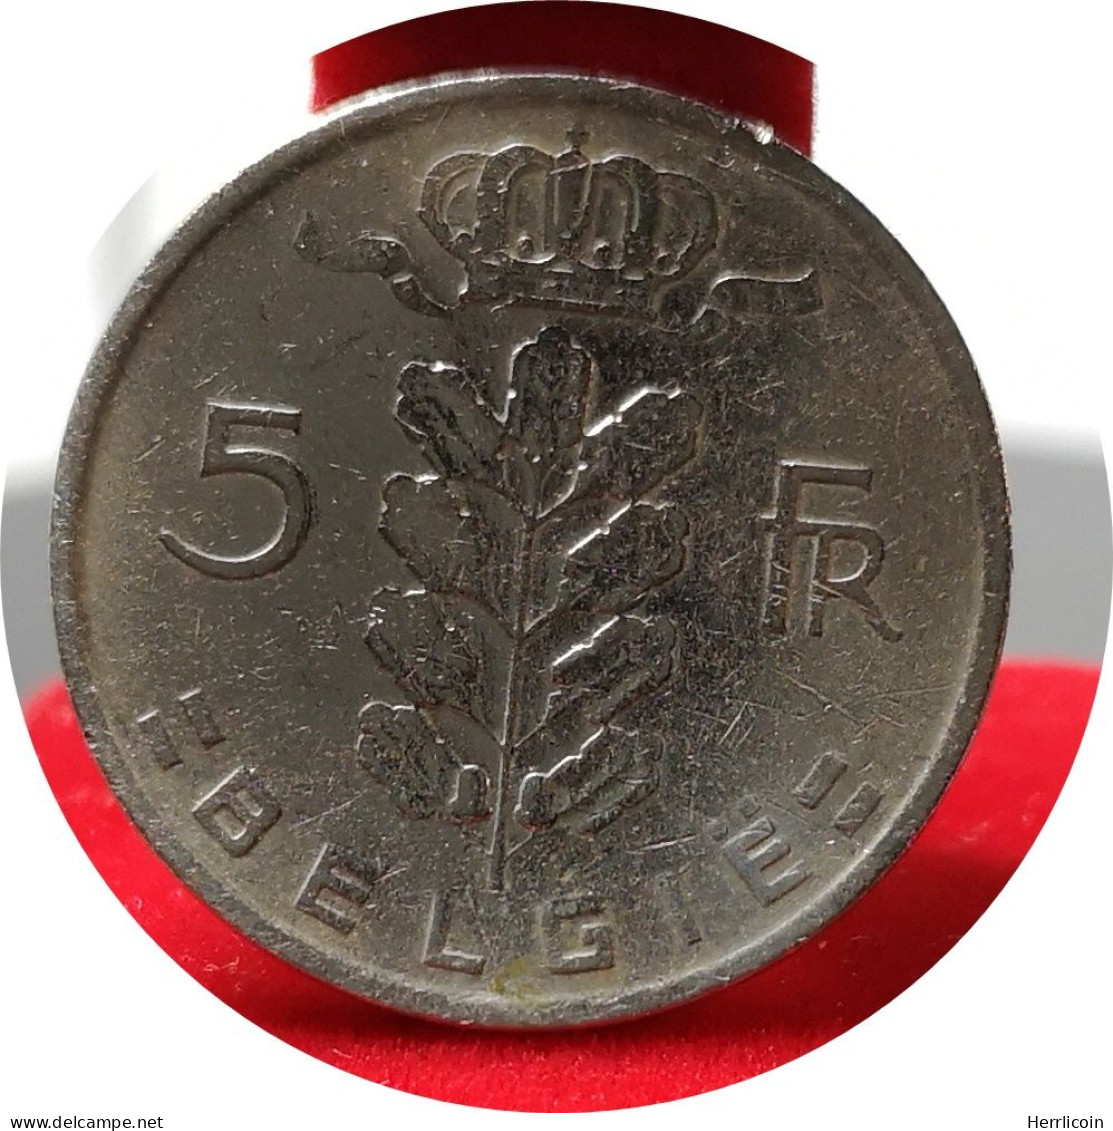 Monnaie Belgique - 1964 - 5 Francs - Type Cérès En Néerlandais - 5 Frank